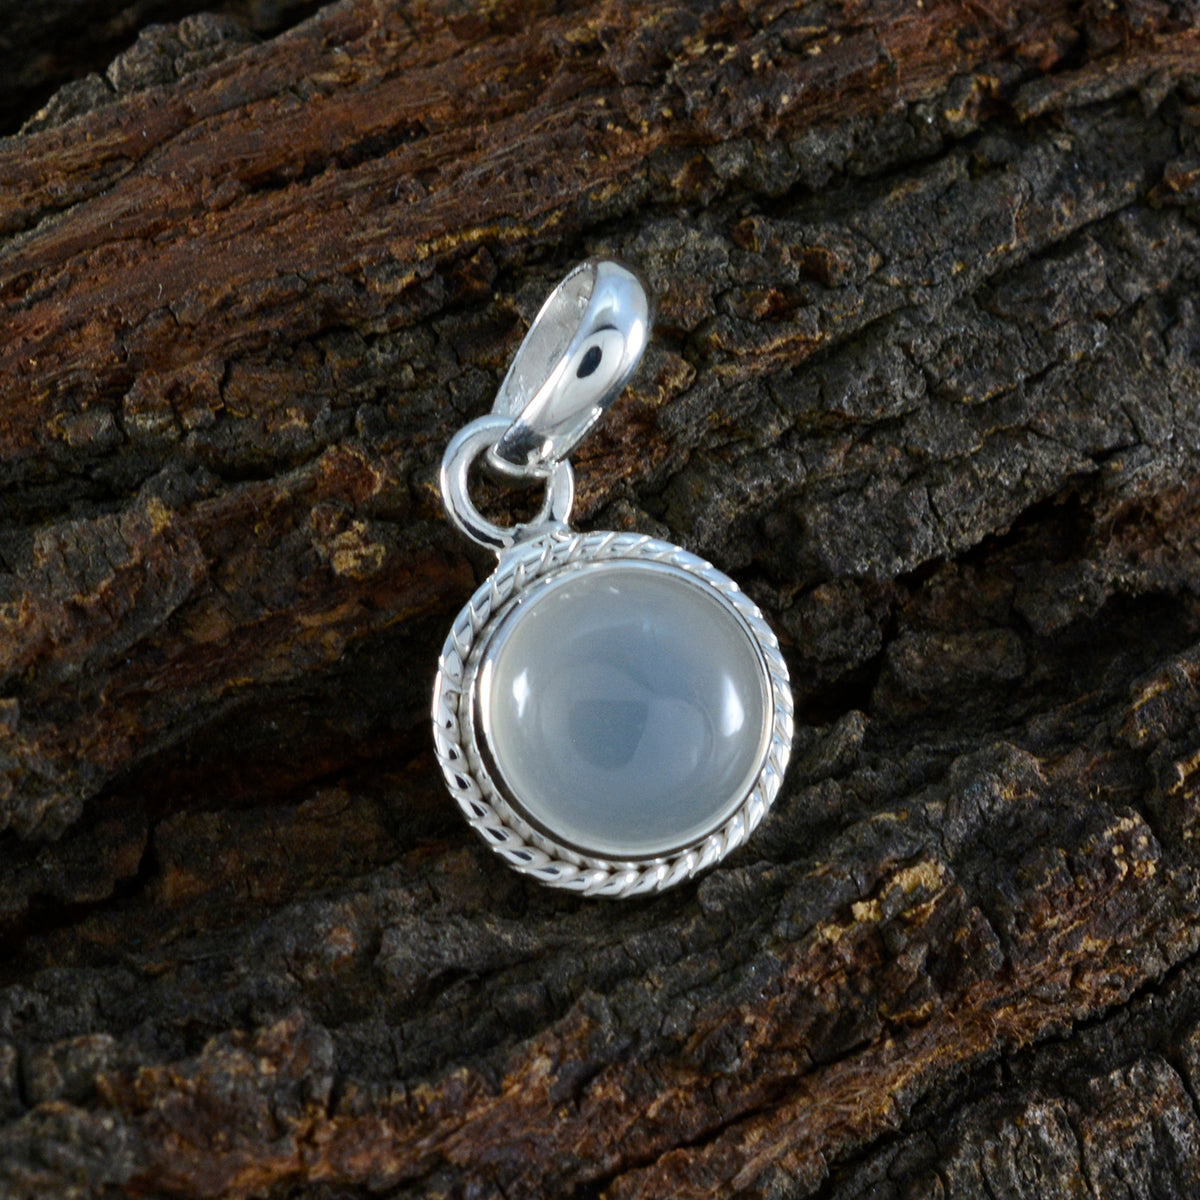 Riyo – pierres précieuses engageantes, cabochon rond, pierre de lune arc-en-ciel blanche, pendentif en argent massif, cadeau pour mariage